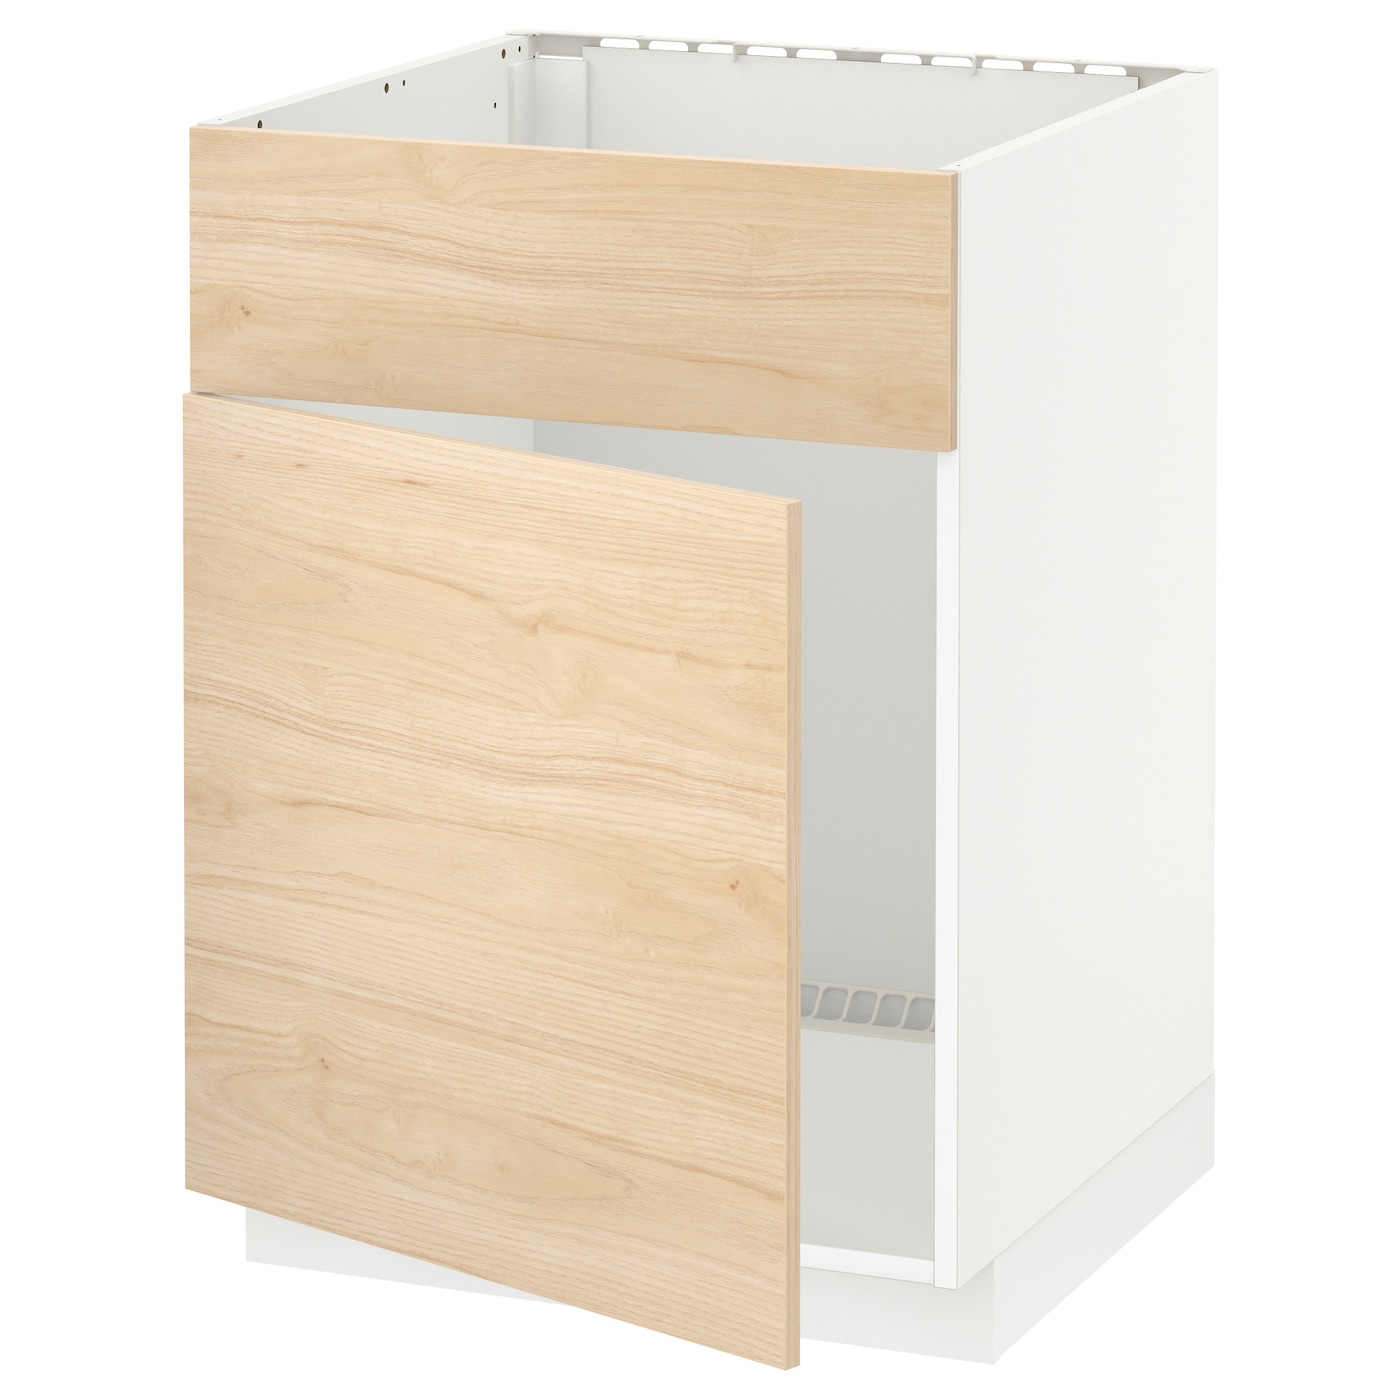 Напольный шкаф - METOD IKEA/ МЕТОД ИКЕА,  88х60  см, белый/под беленый дуб